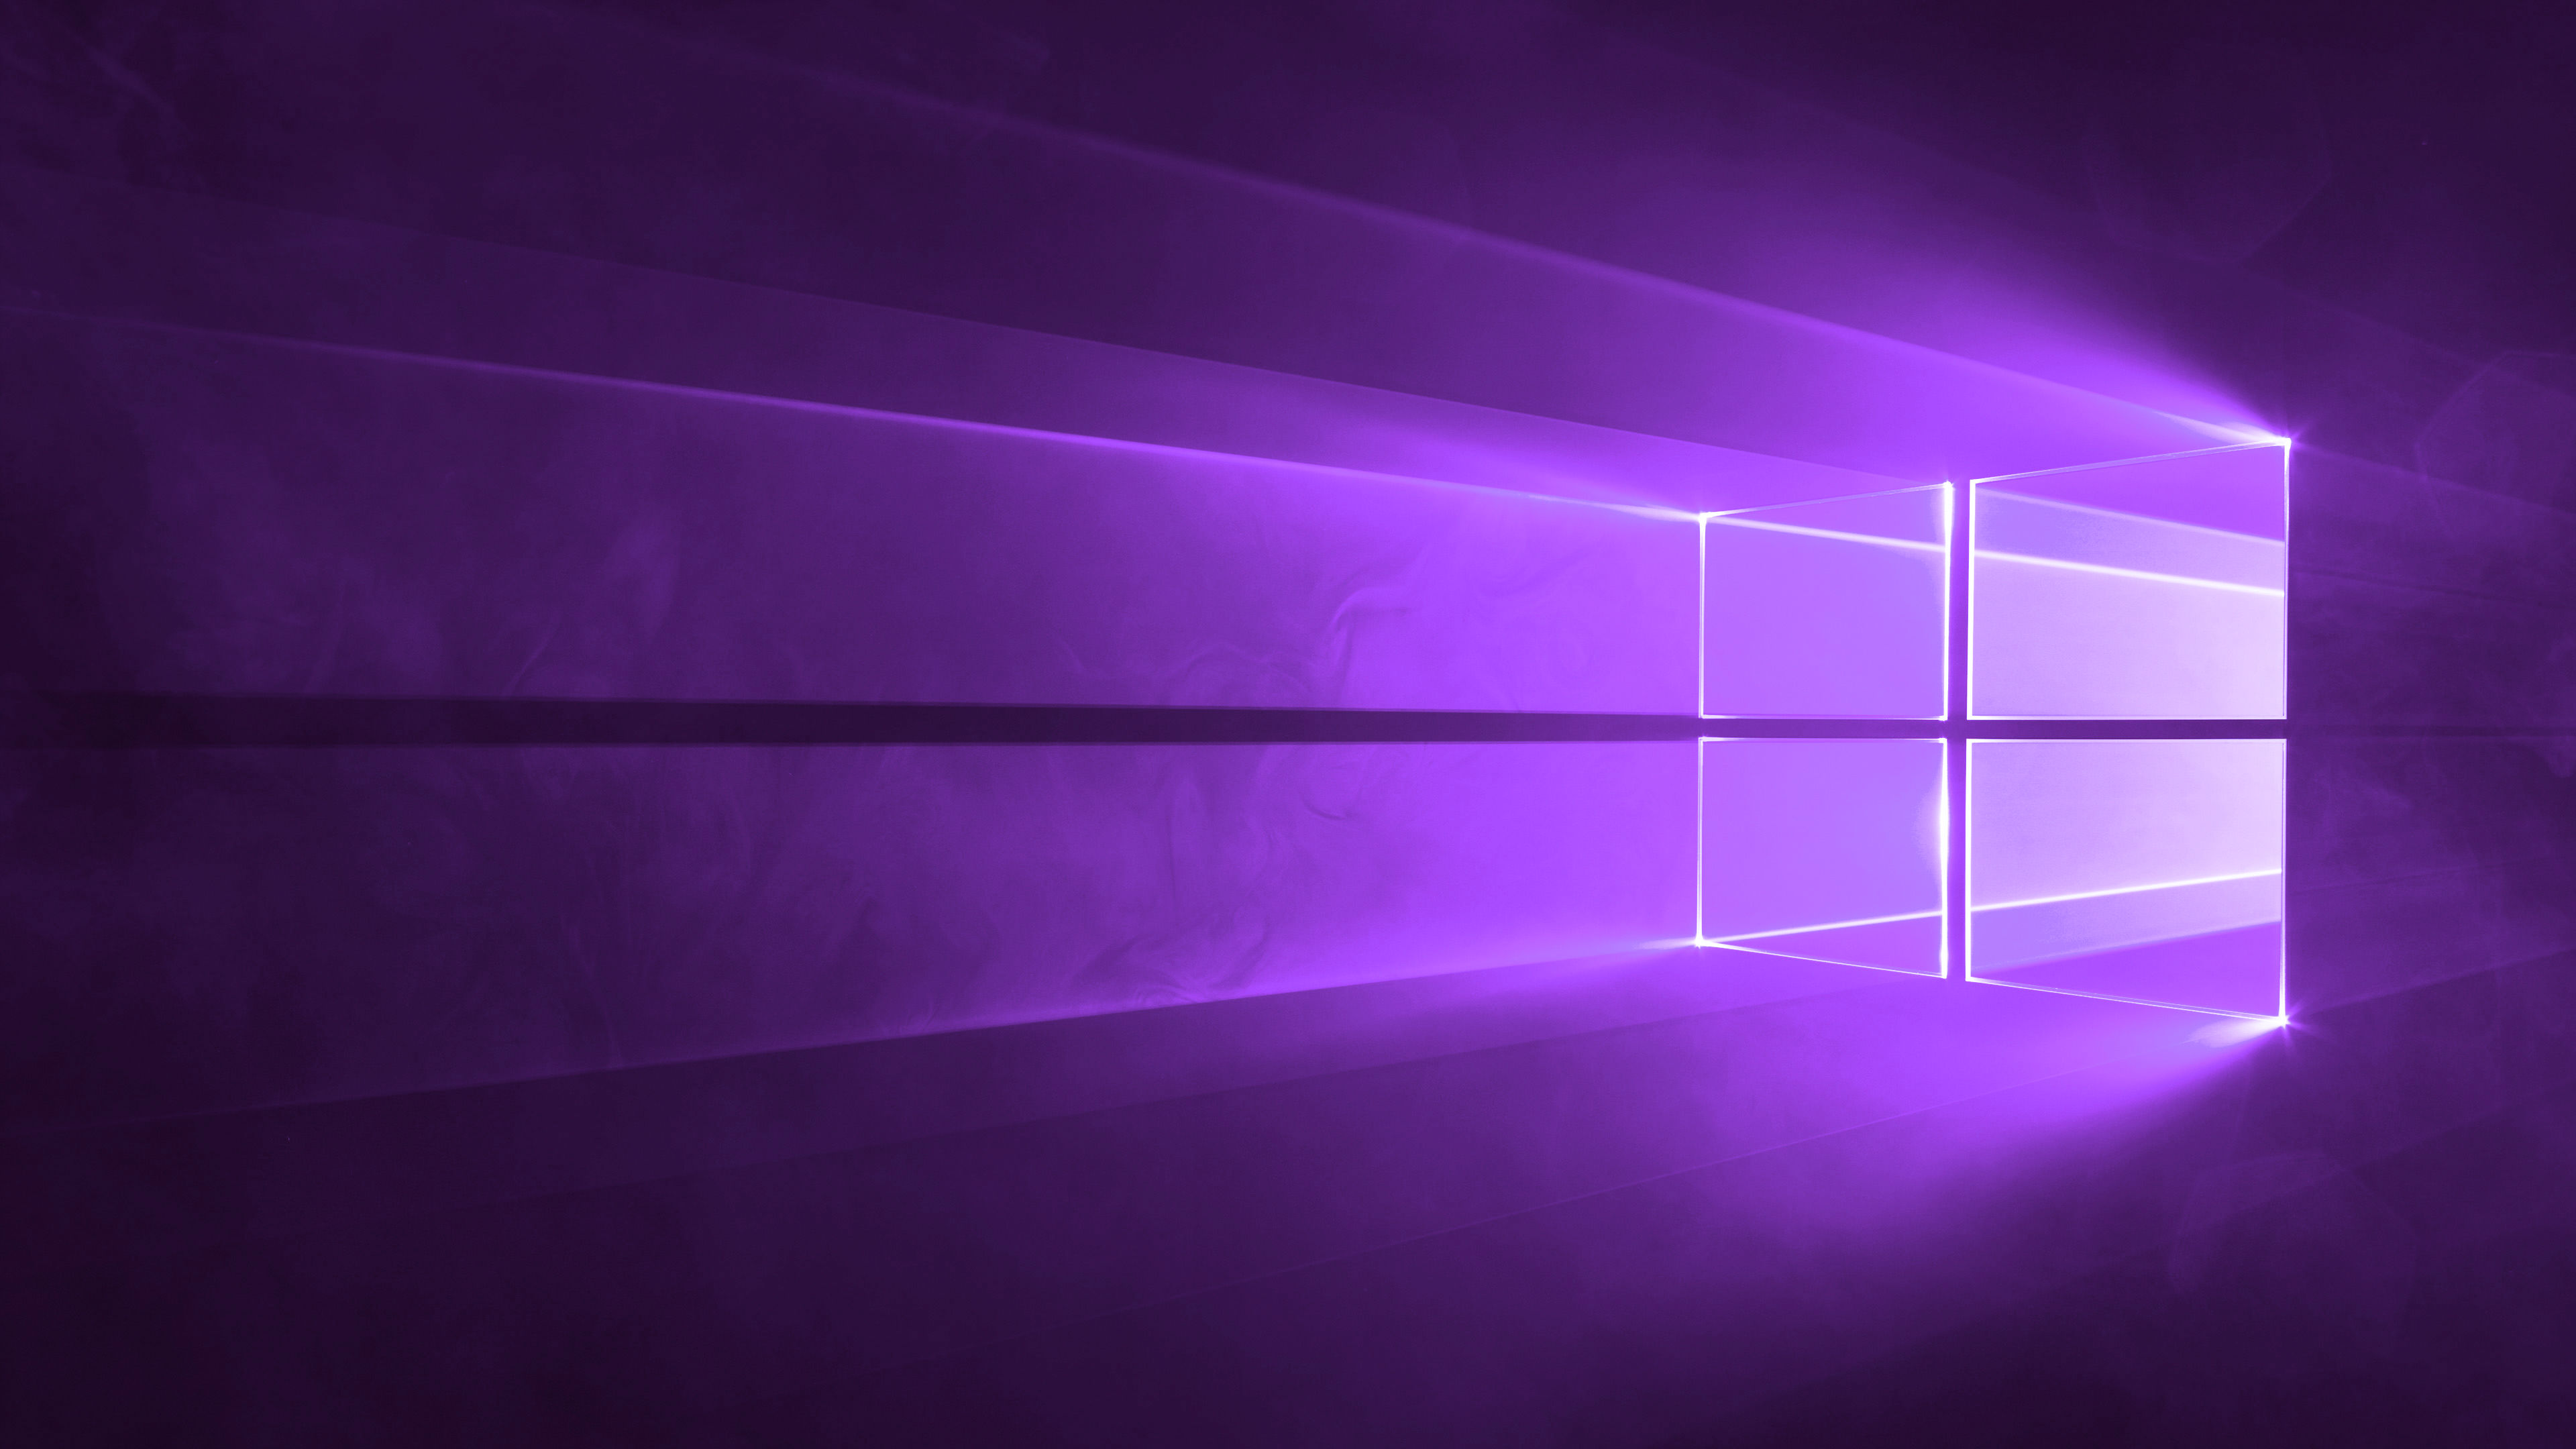 Hình nền cửa sổ windows 10: Windows 10 là hệ điều hành hoàn hảo cho những ai yêu thích công nghệ và tốc độ. Với những hình nền cửa sổ windows 10 của chúng tôi, bạn sẽ có thể tận hưởng màn hình máy tính của mình với những hình ảnh đẹp và nổi bật nhất.